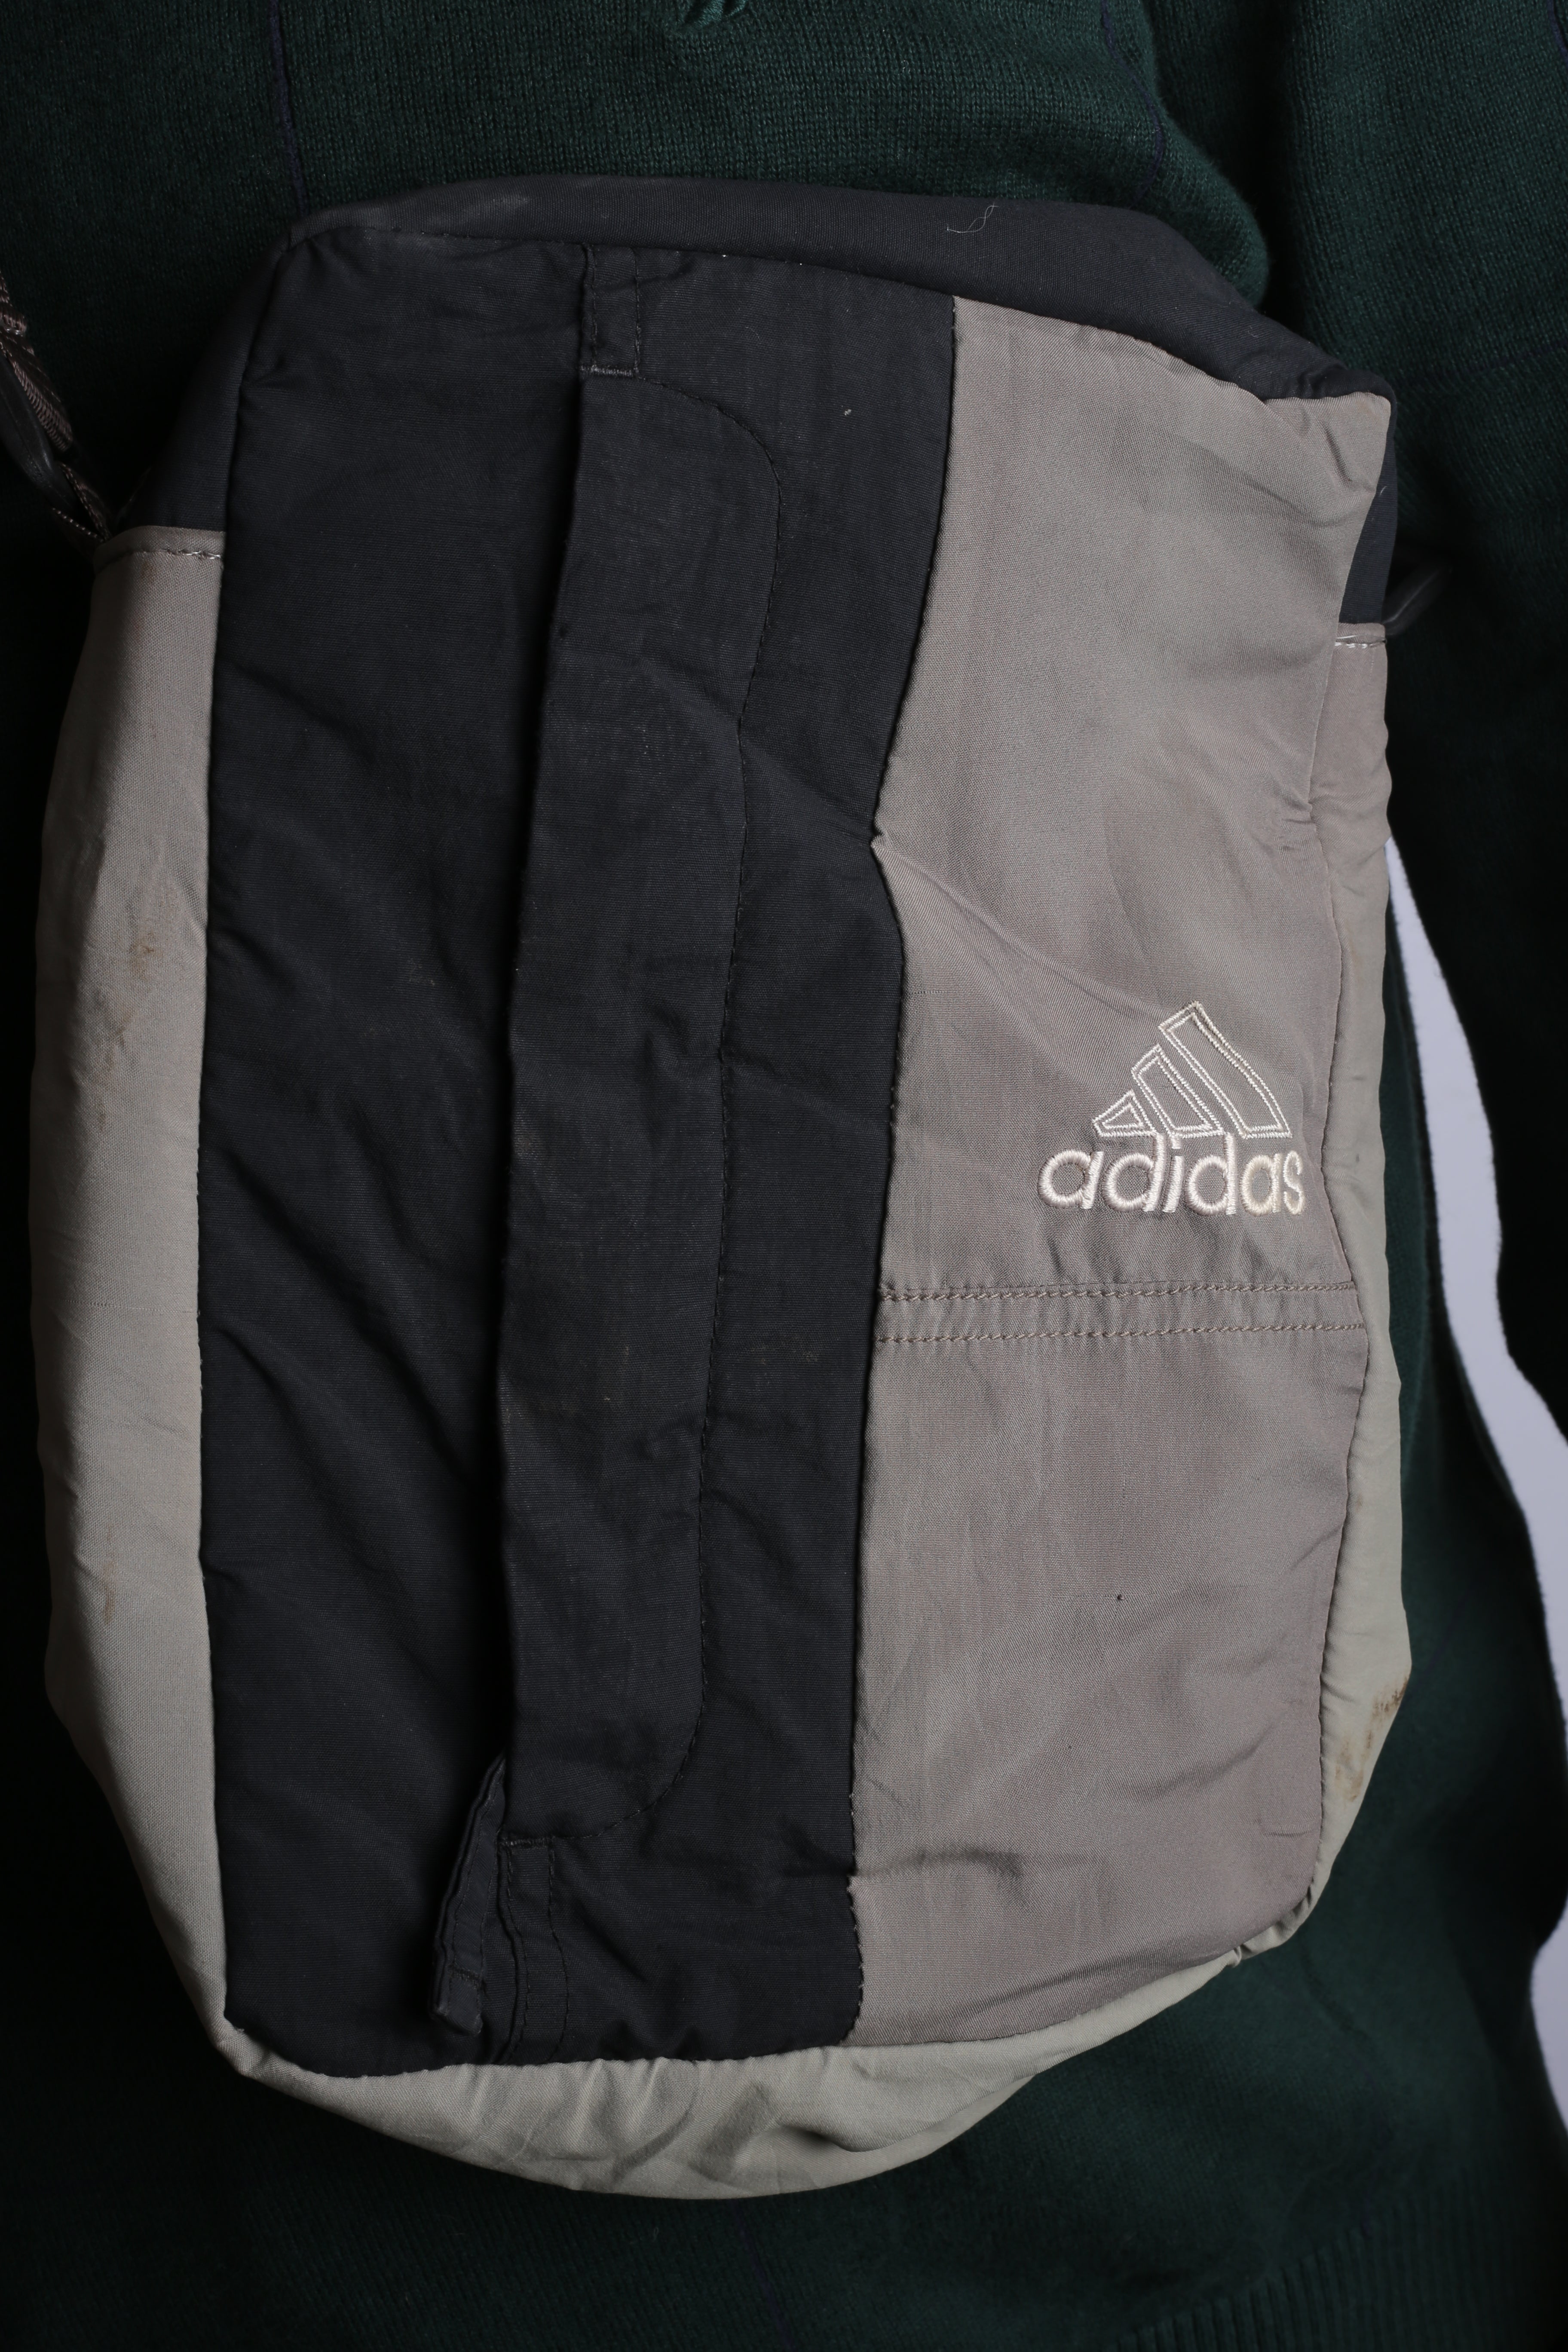 Vintage Adidas Re-Work Bag Grey/Black